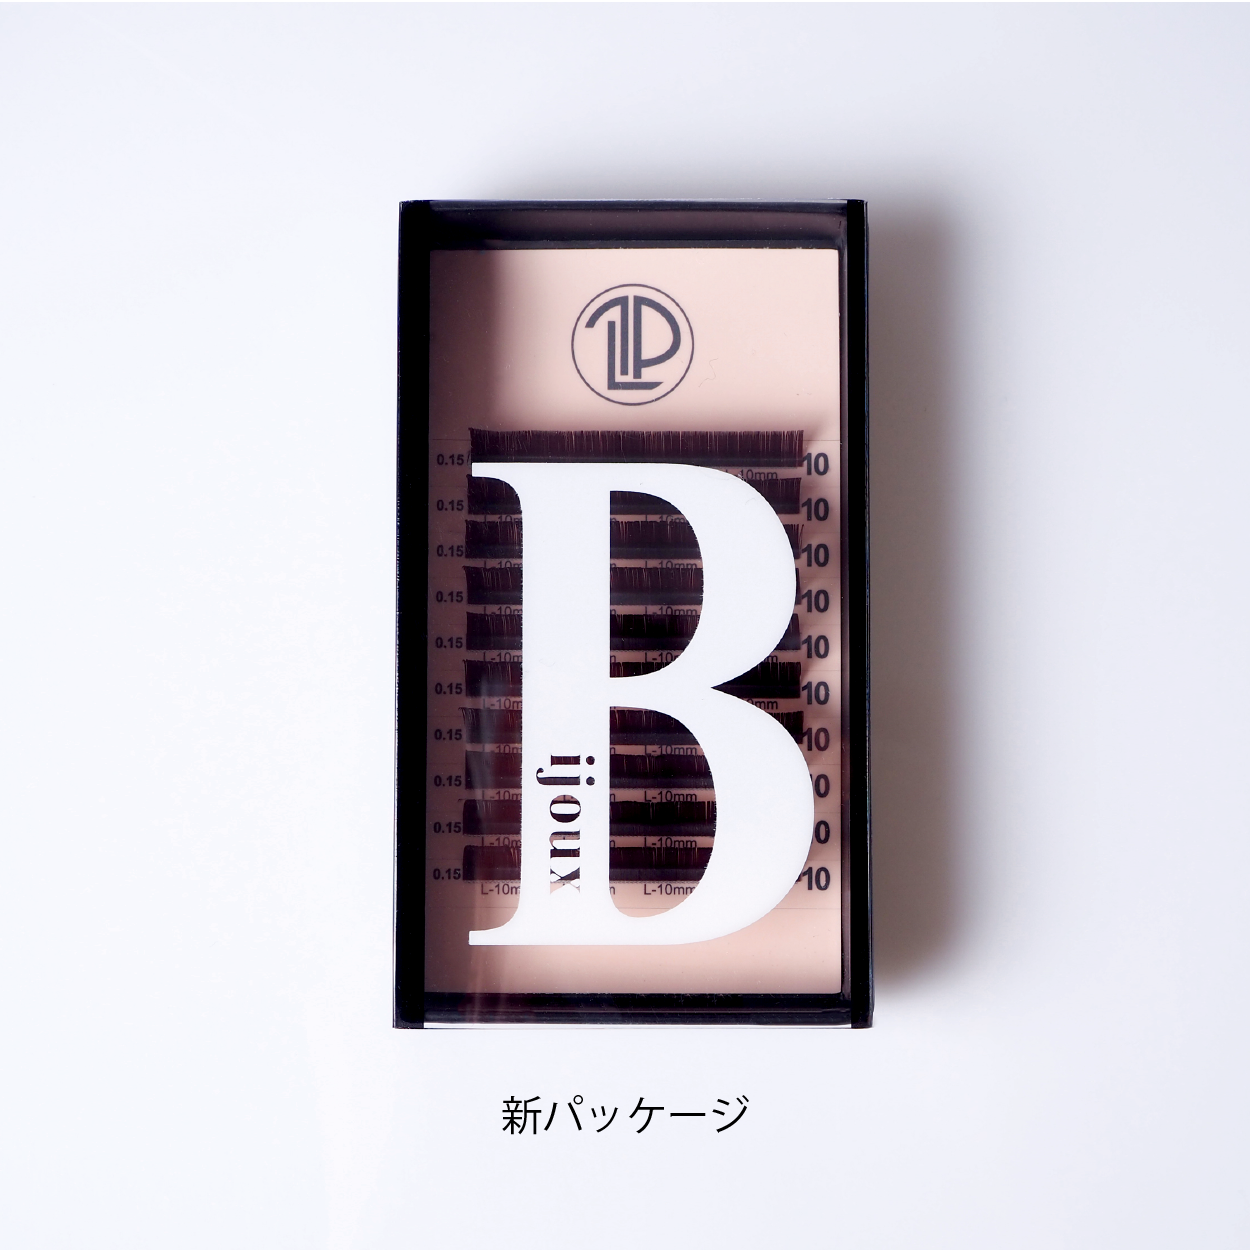 【MIX】Bijoux セドナ / 0.15mm